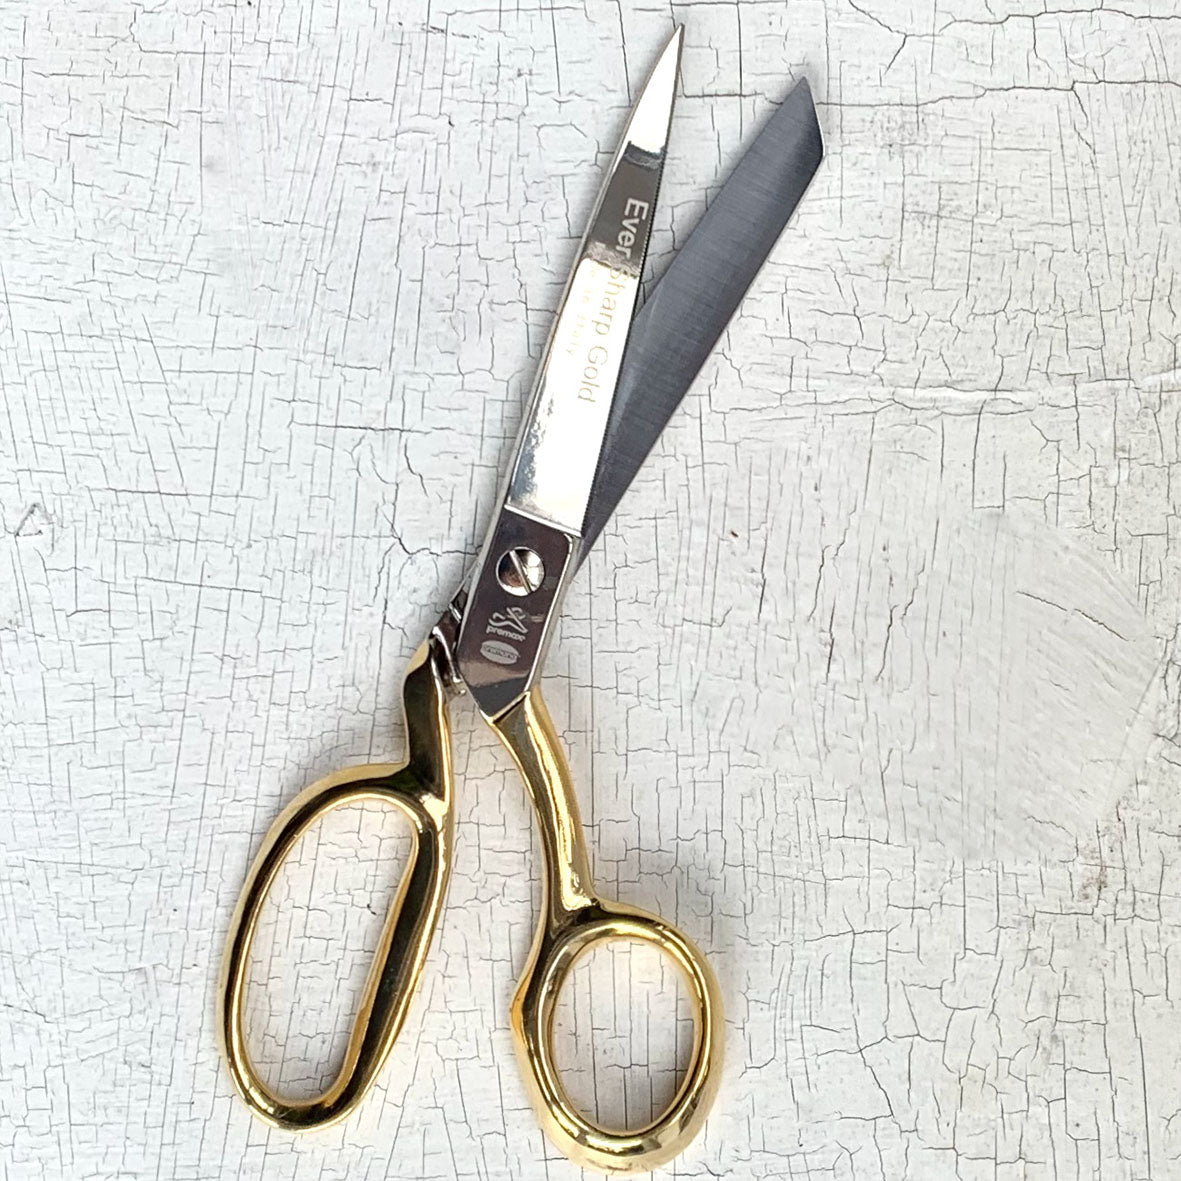 Tailor's scissors, gold, 20cm